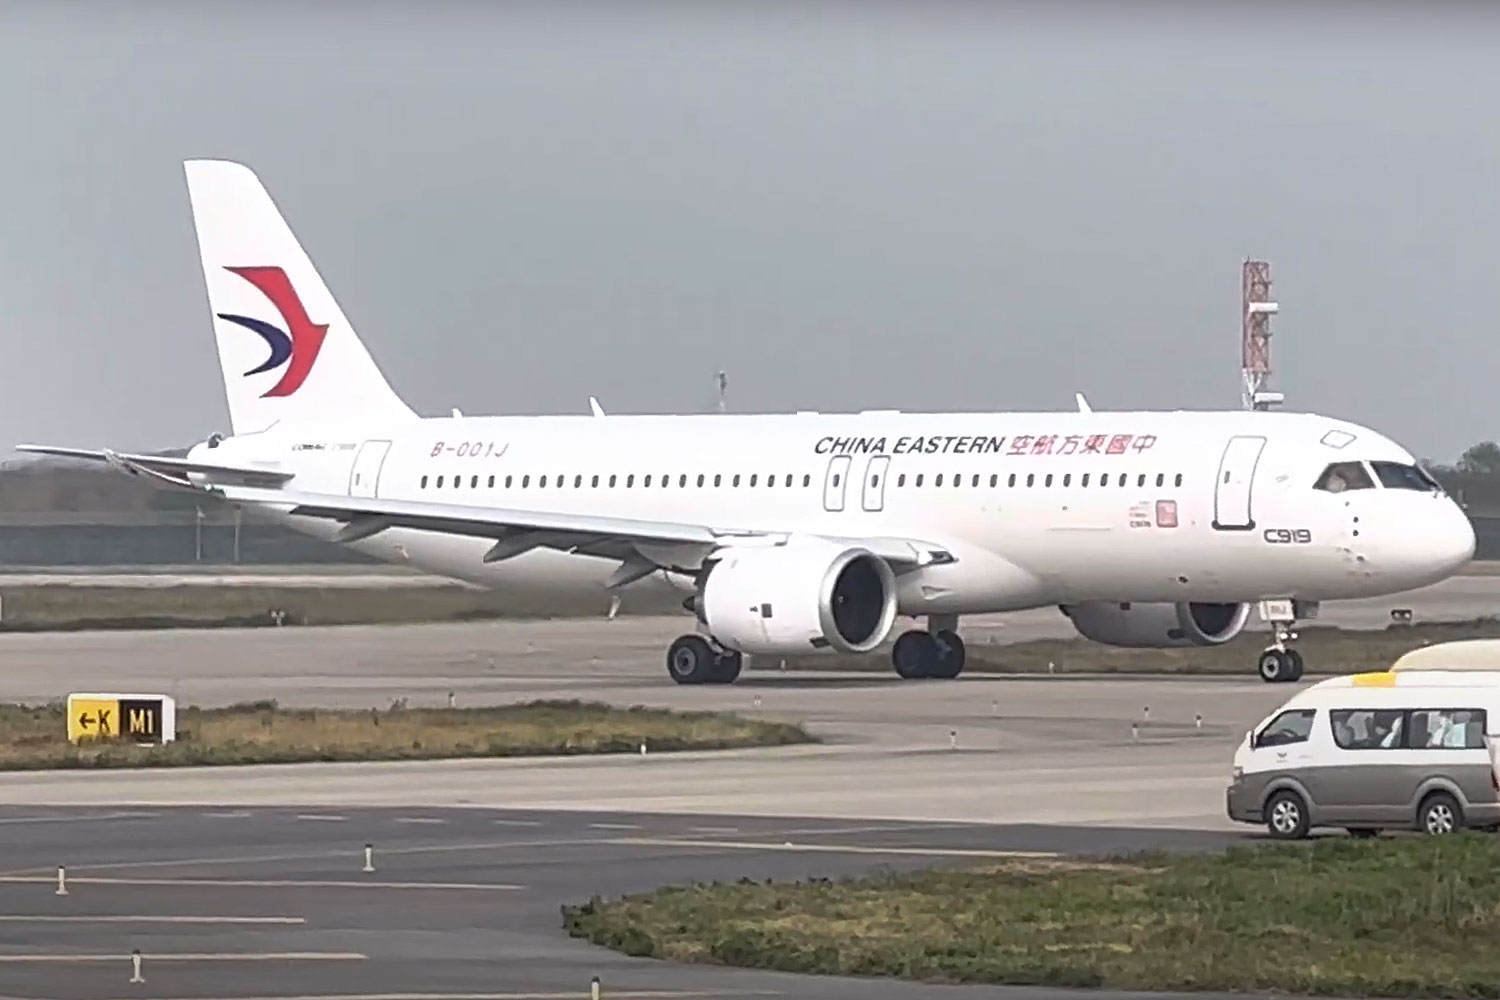 Jato C919 surge nas cores da China Eastern Airlines, com entrega prevista até o final deste ano